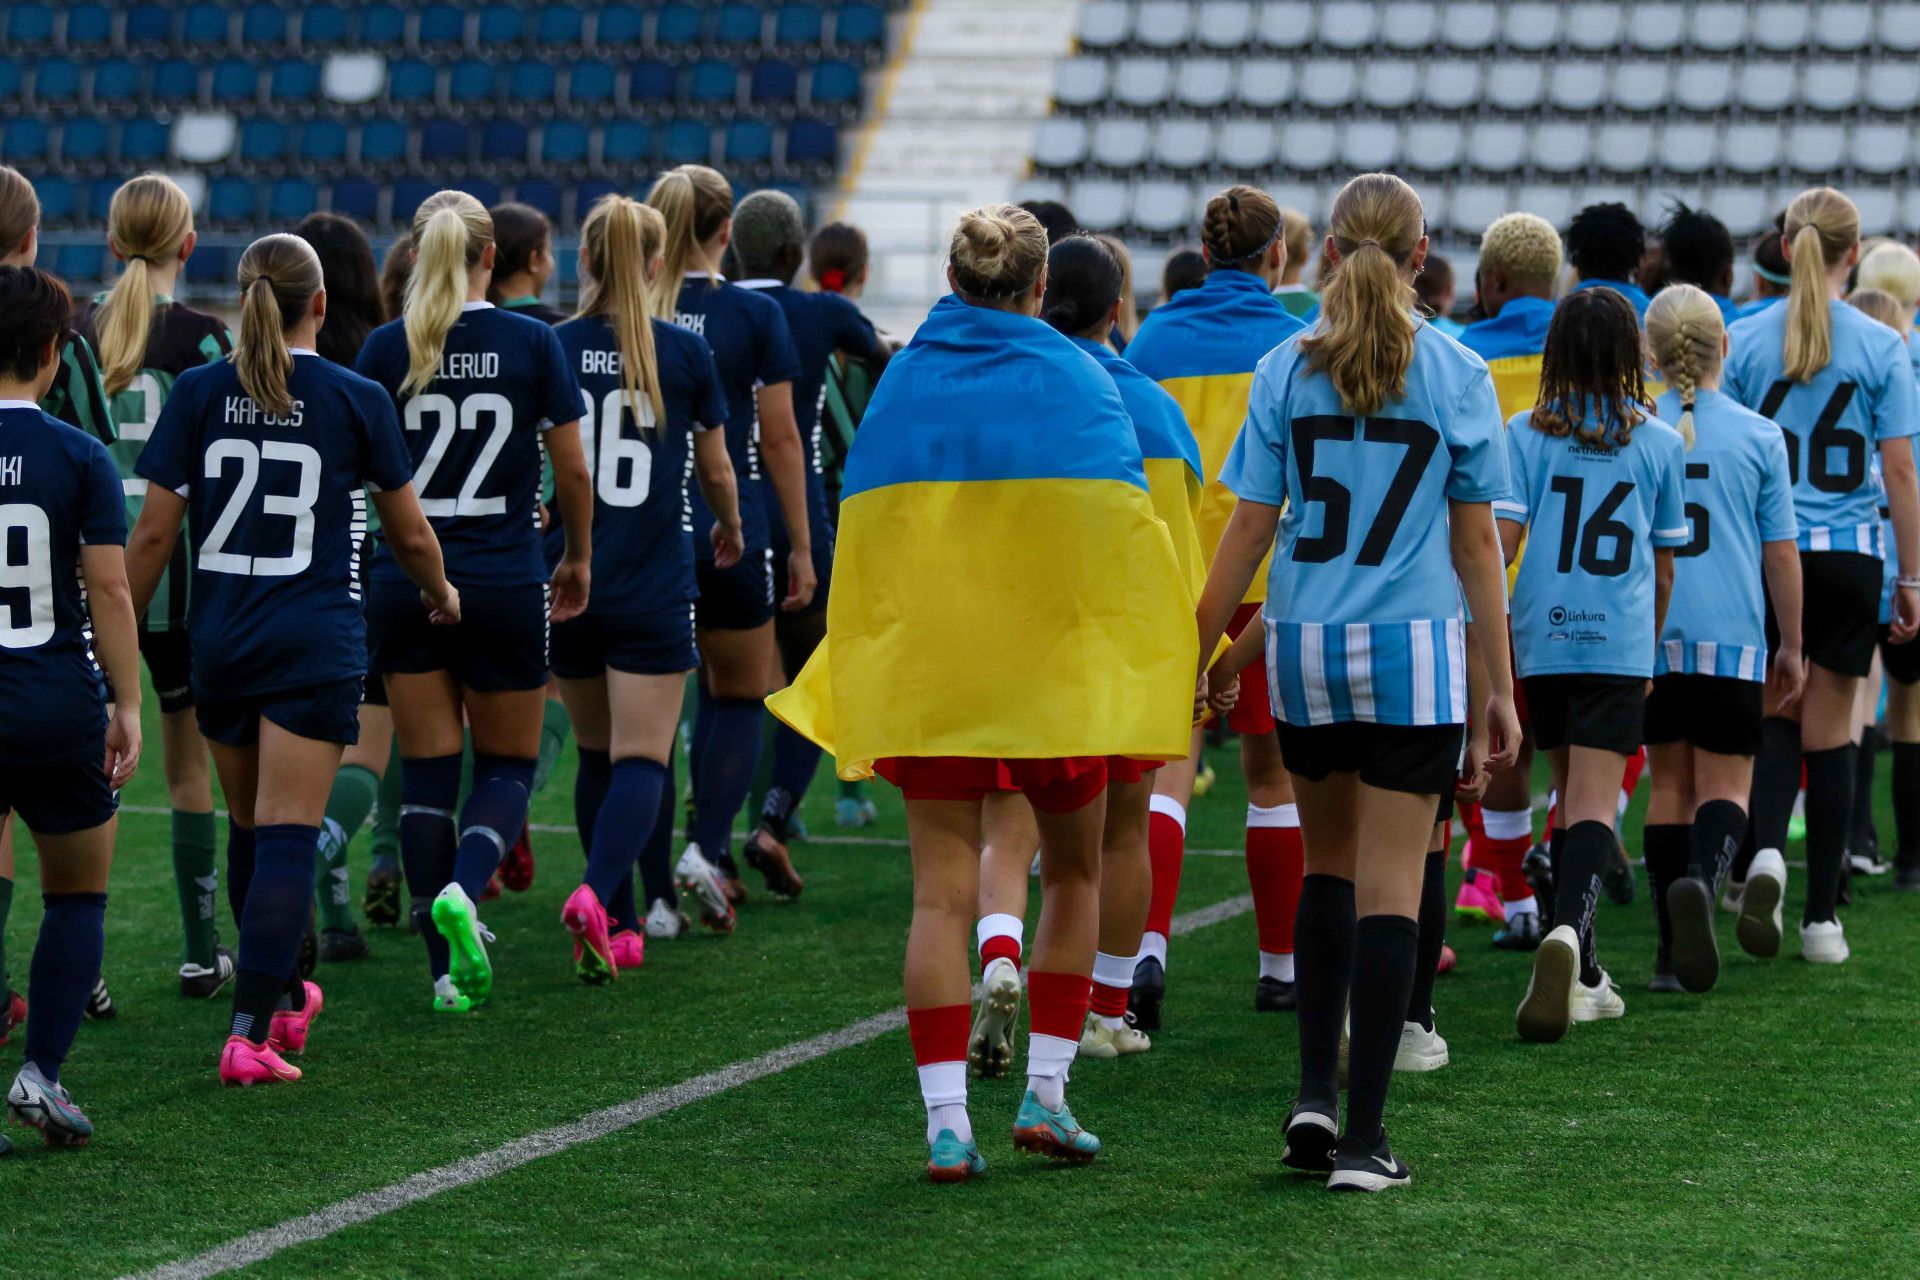 Сотрудники Кривбасса сбежали после матча женской Лиги чемпионов